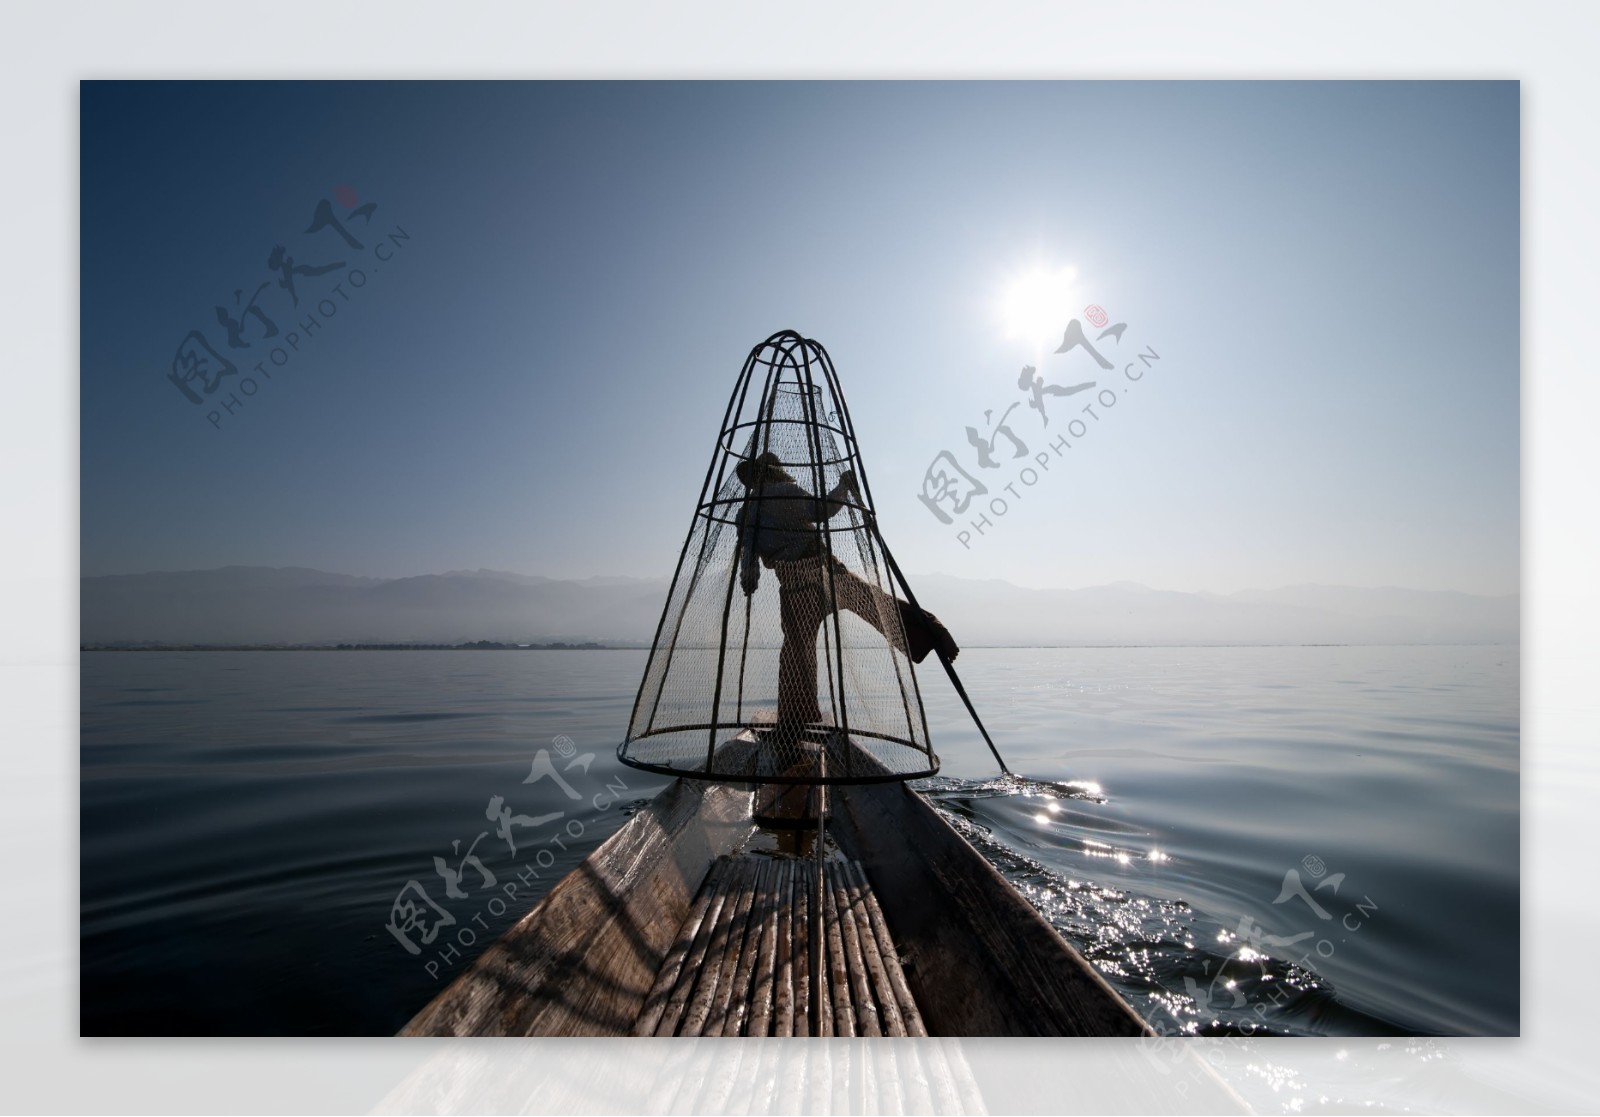 渔船捕鱼的渔民图片